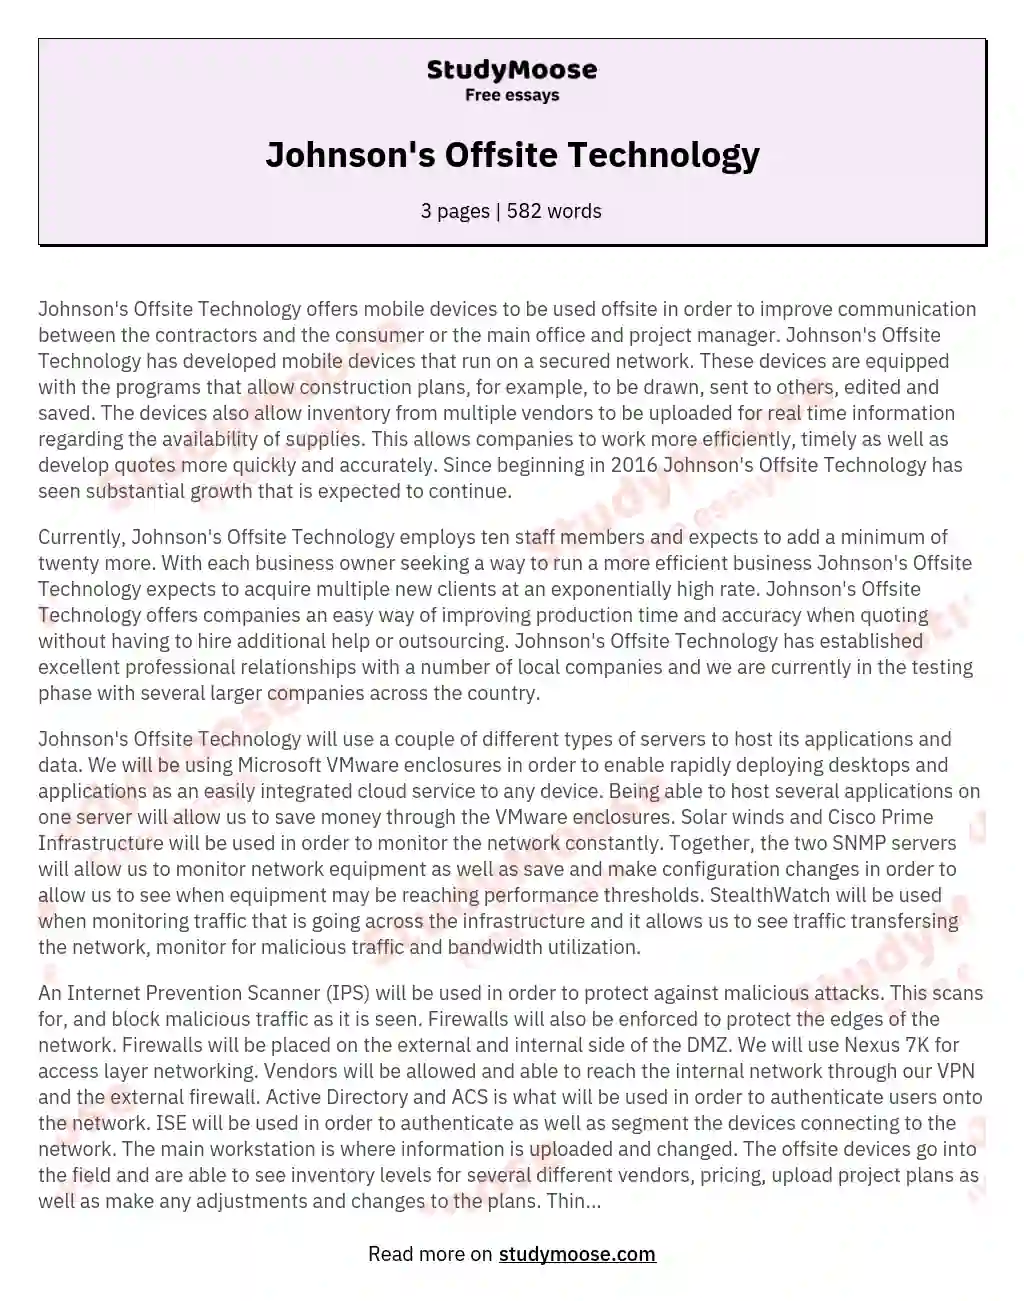 Johnson's Offsite Technology essay